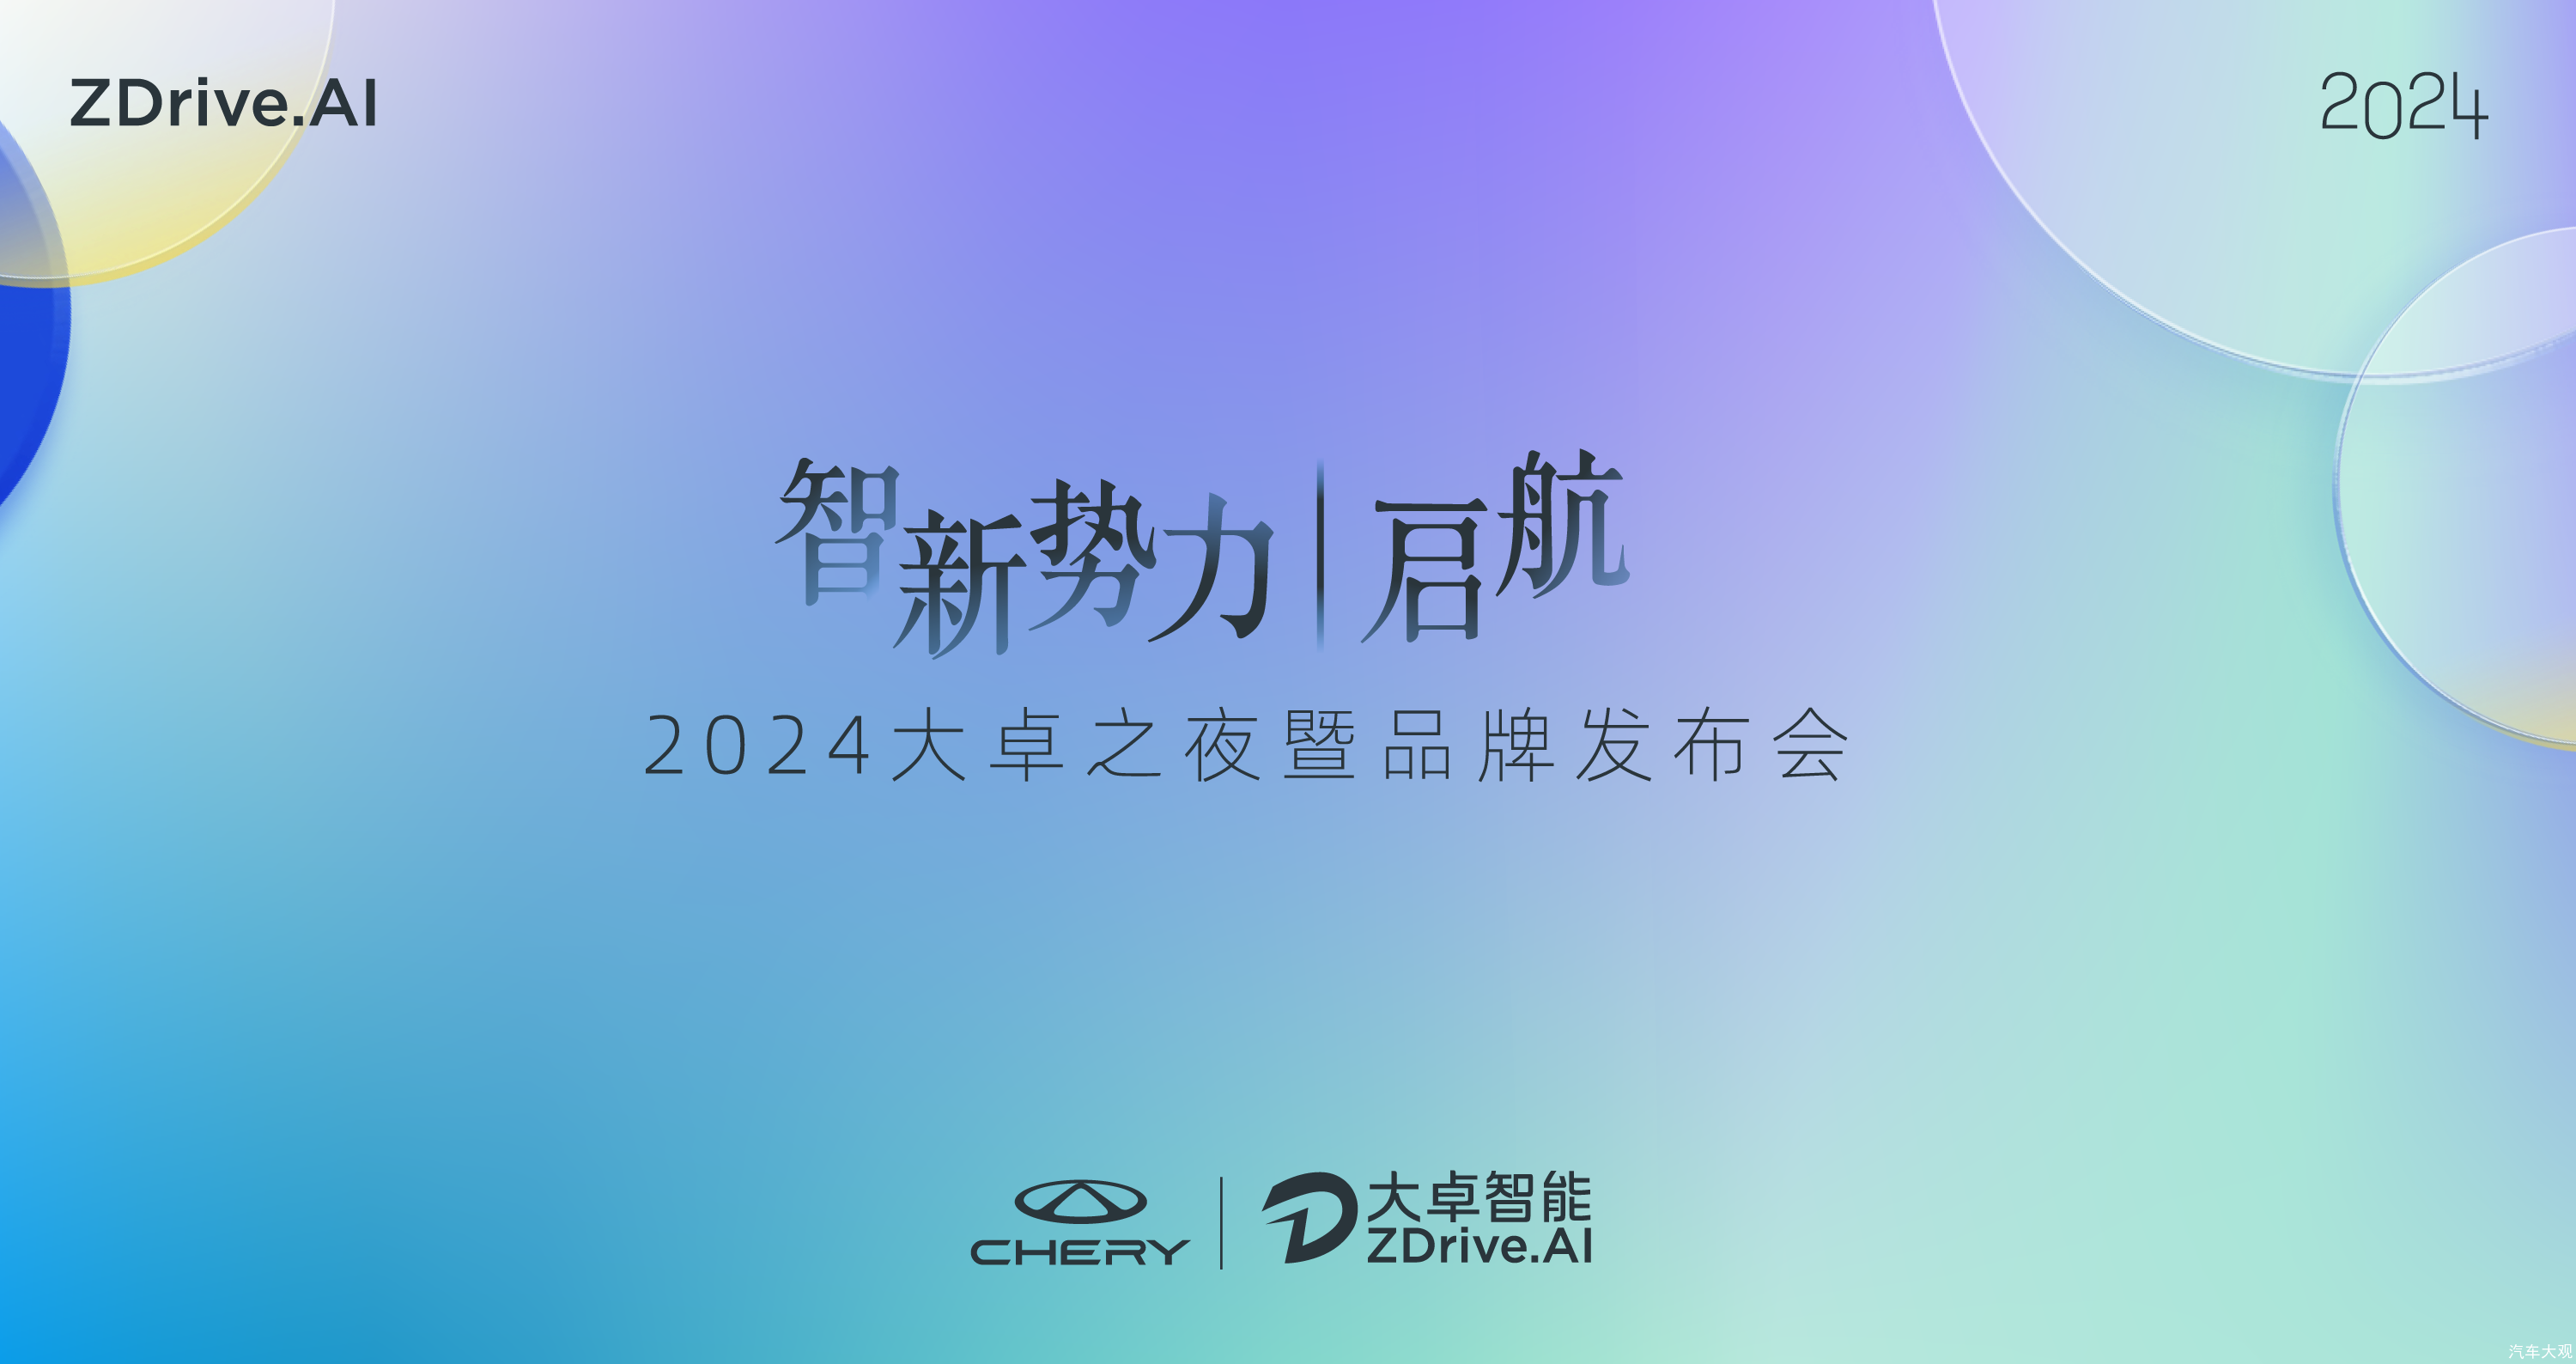 “奇瑞的新灵魂”大卓智驾品牌发布，2024奇瑞智能化